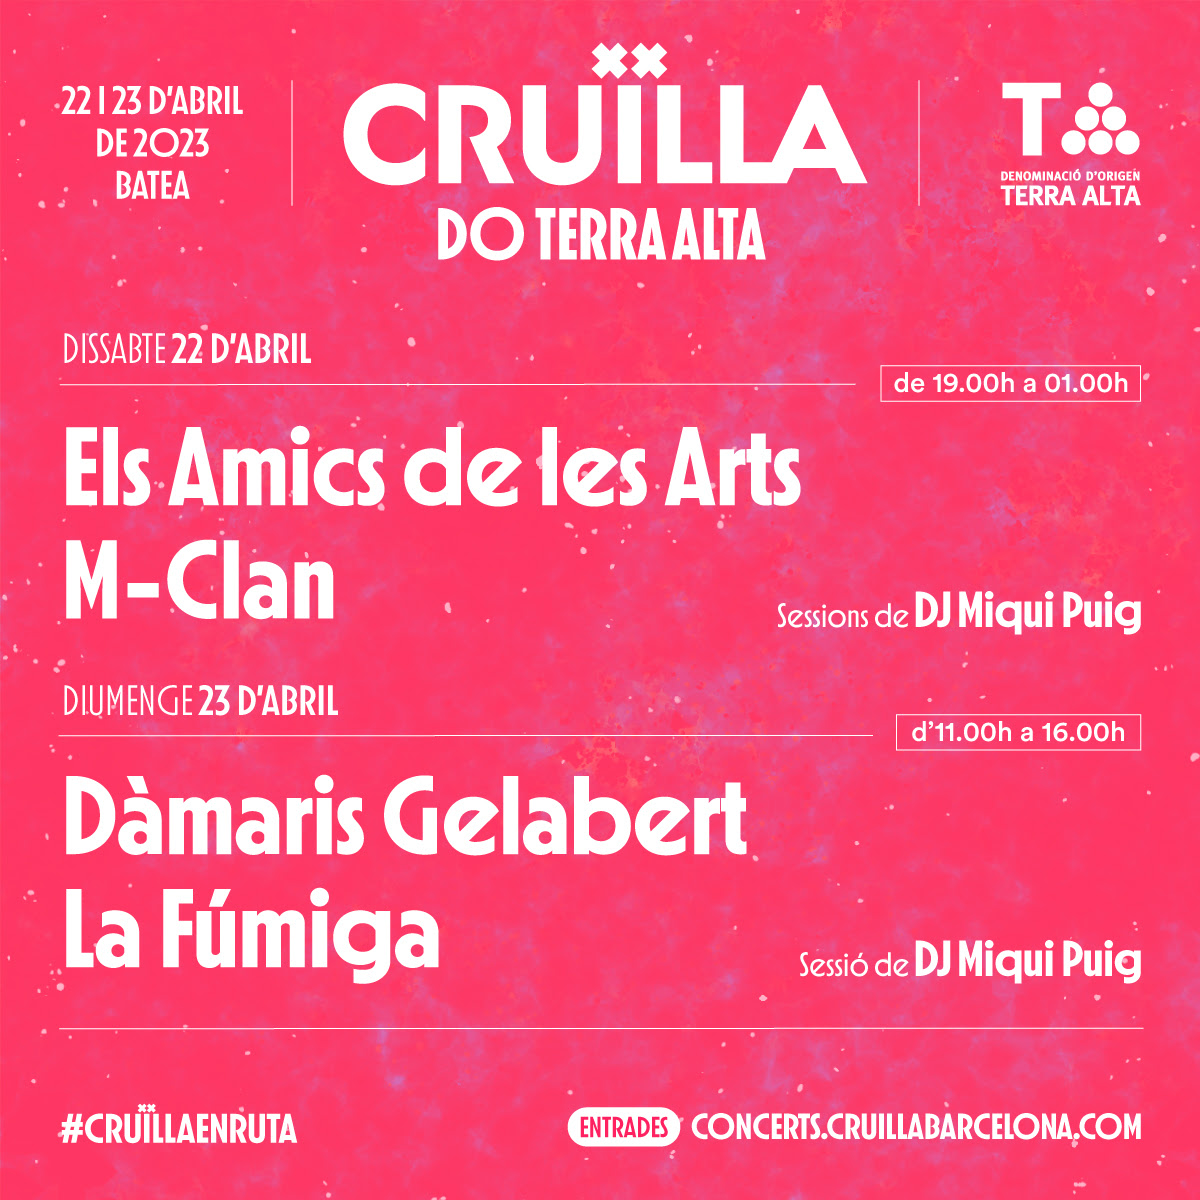 Cruïlla DO Terra Alta: MClan, Els Amics de les Arts, La Fúmiga, Dàmaris Gelabert i Dj Miqui Puig actuarán en la primera edición del festival.